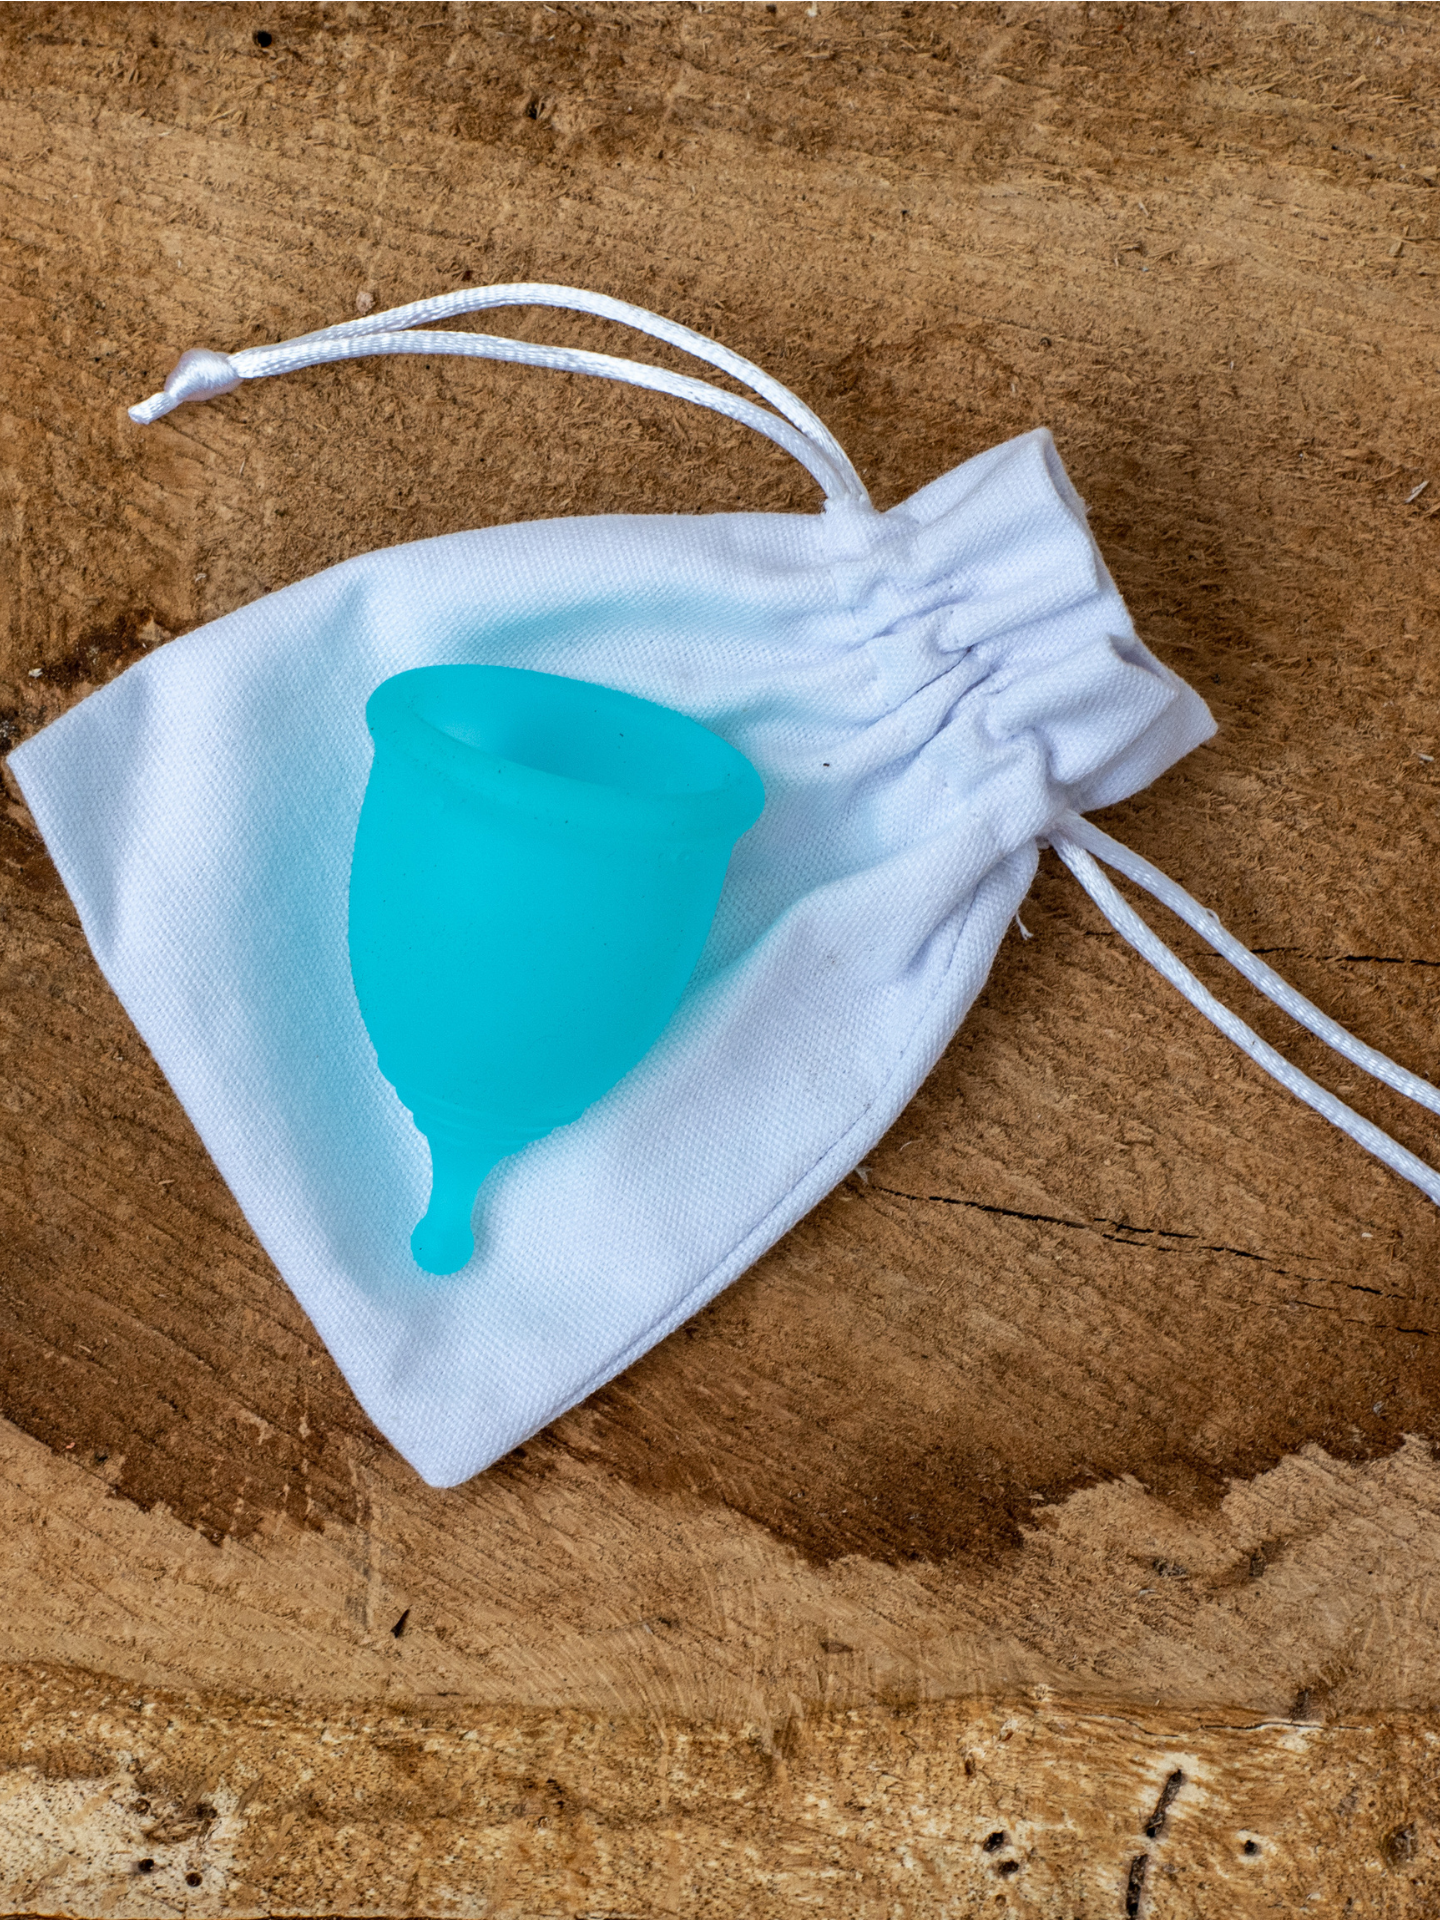 Menstrual Cup for Ocean Adventurers